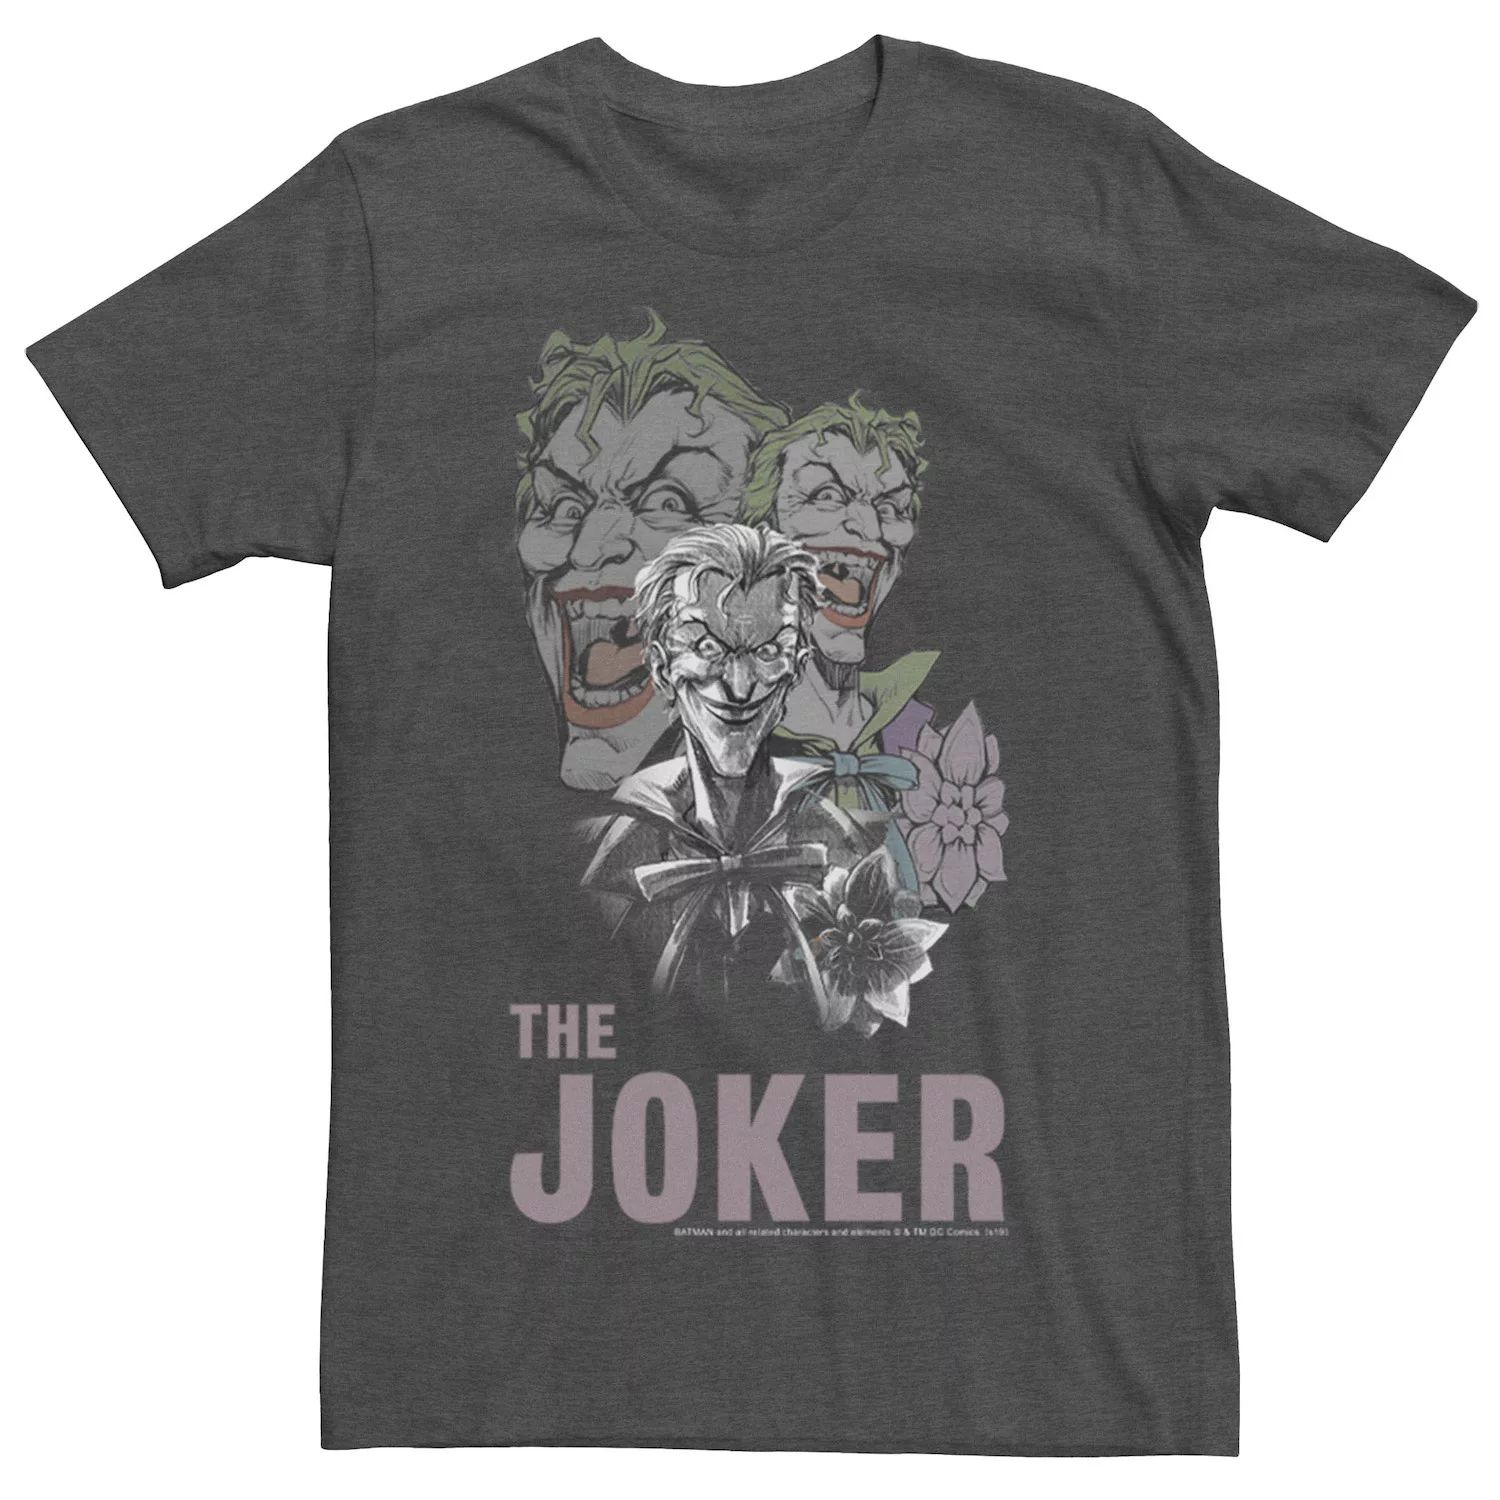 Мужская футболка с коллажем The Joker DC Comics фото